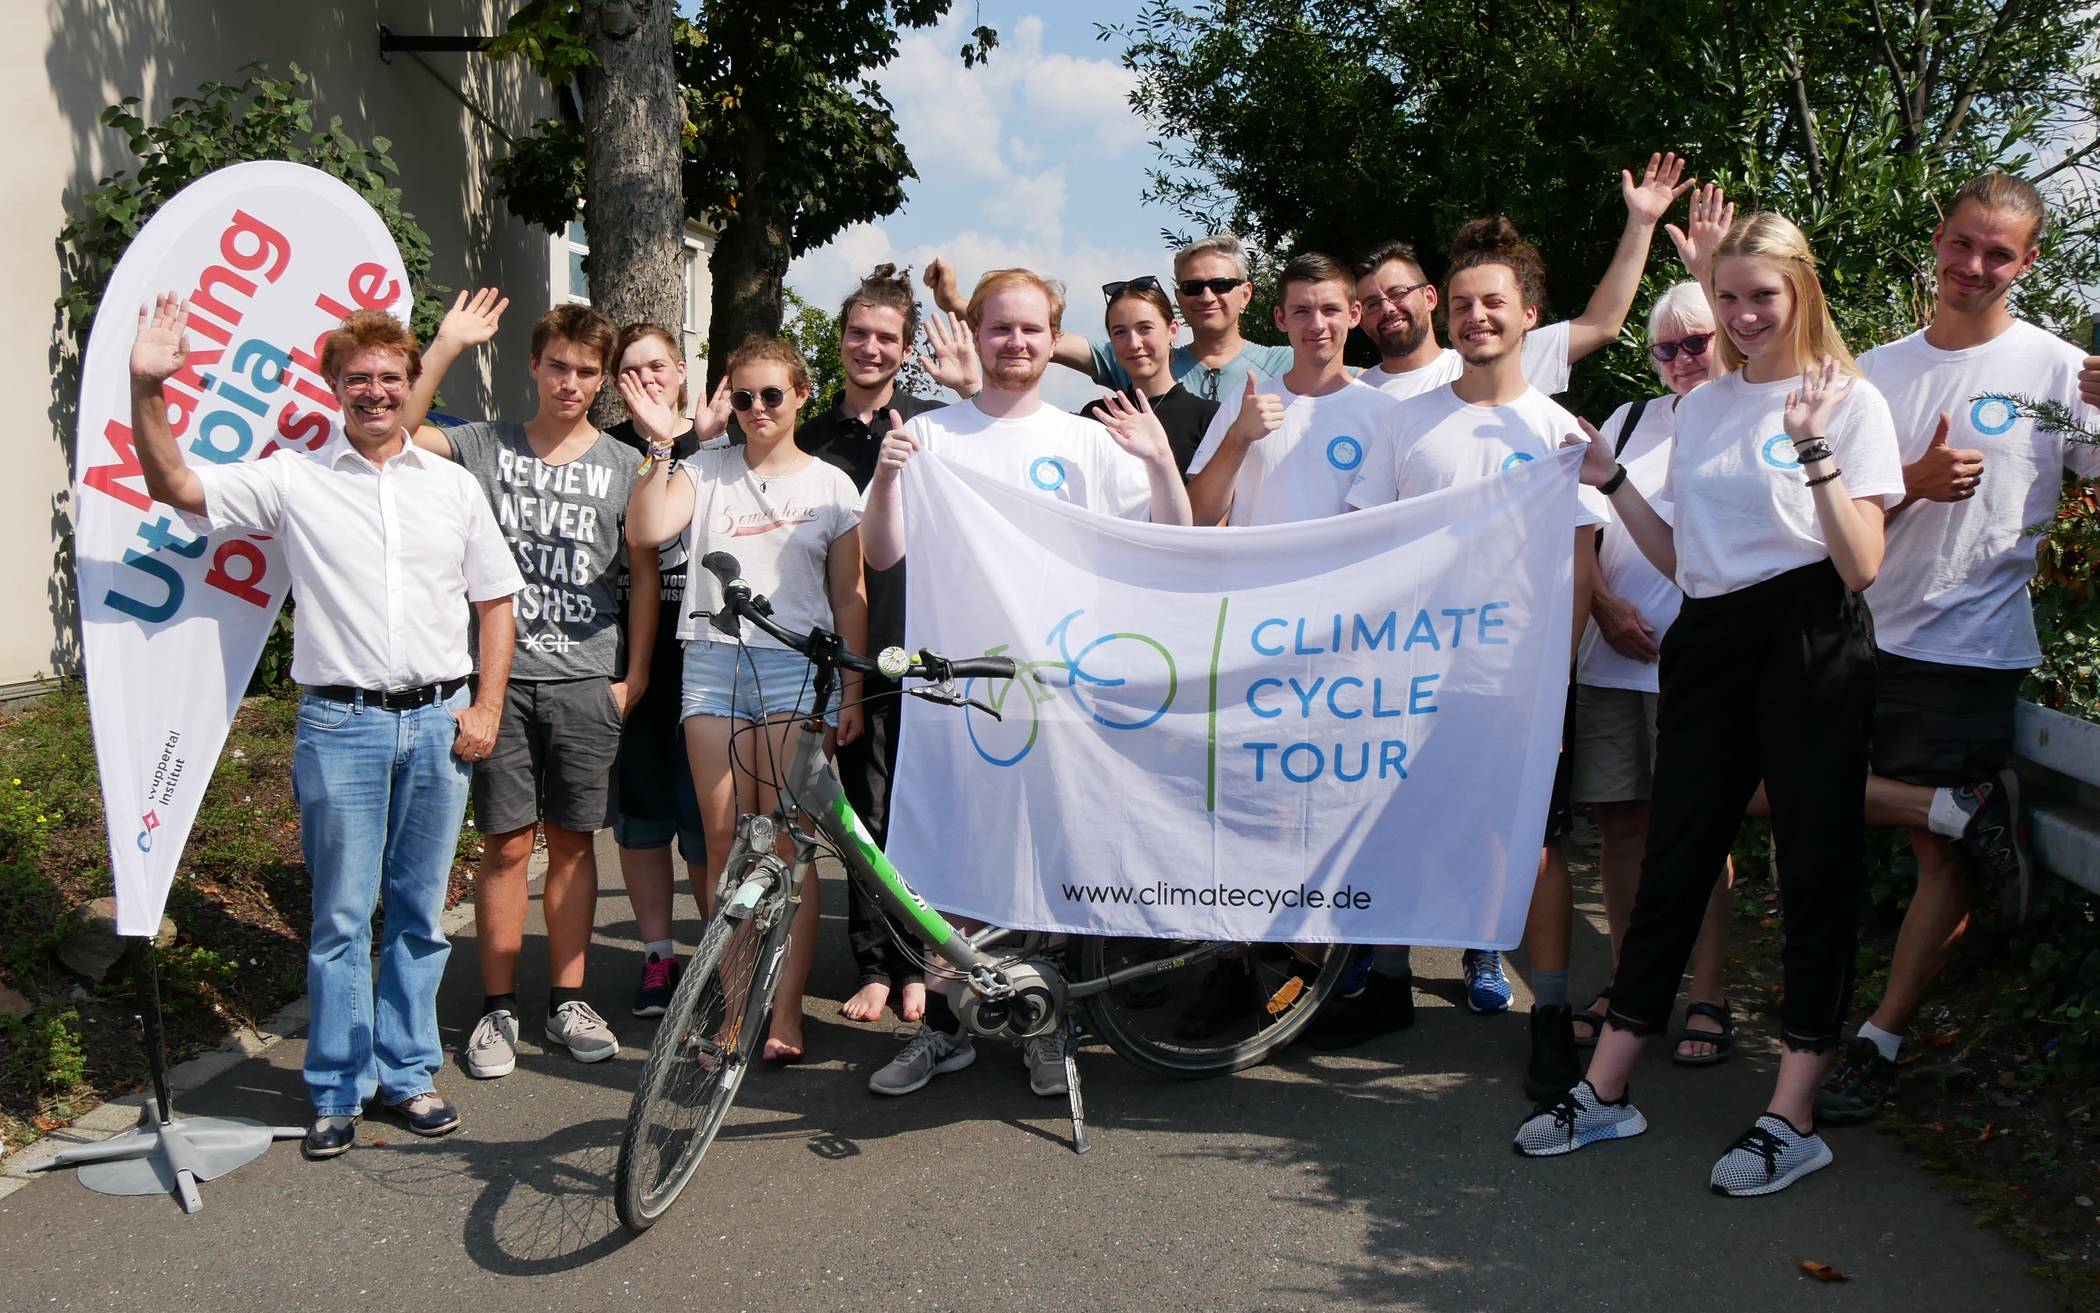 Die „Climate Cycle Tour“ machte Station am Wuppertal Institut. Oliver Wagner, Co-Leiter des Forschungsbereichs Energiepolitik in der Abteilung Energie-, Verkehrs- und Klimapolitik (links), hielt einen kurzen Impulsvortrag zum Thema Energiepolitik und hob dabei die Bedeutung bürgerschaftlichen Engagements hervor.